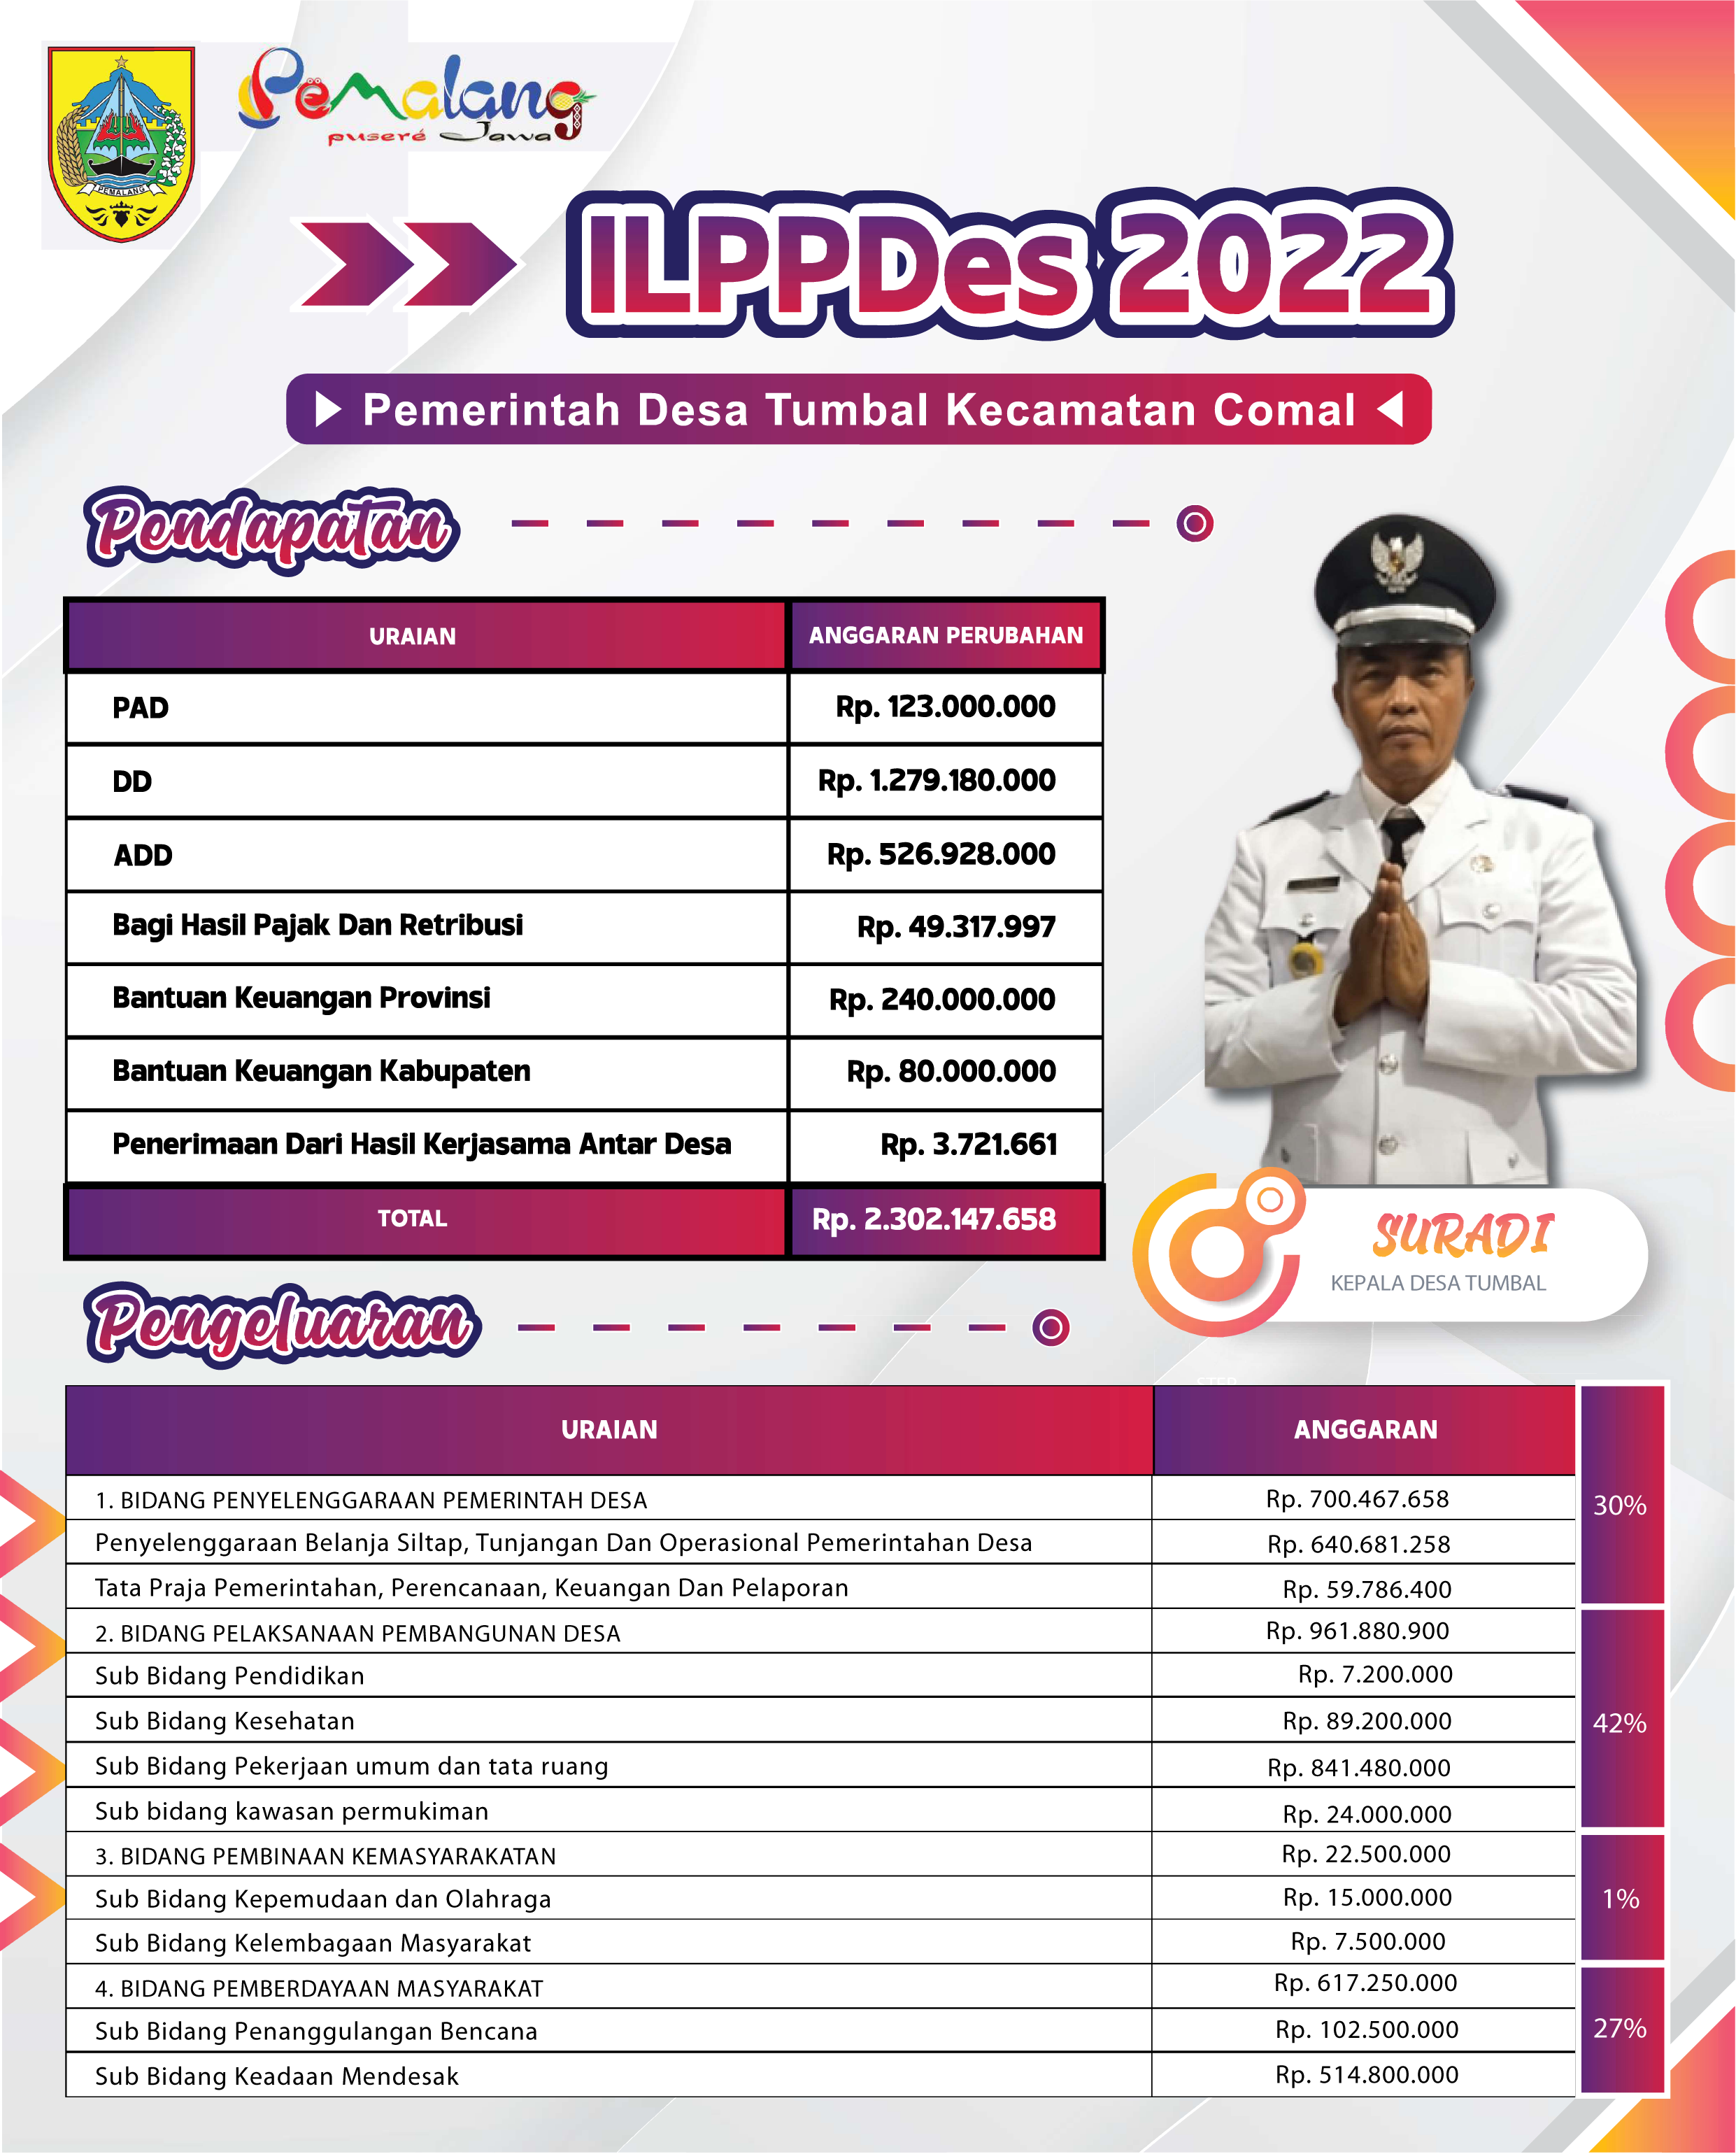 ILPP Desa 2022